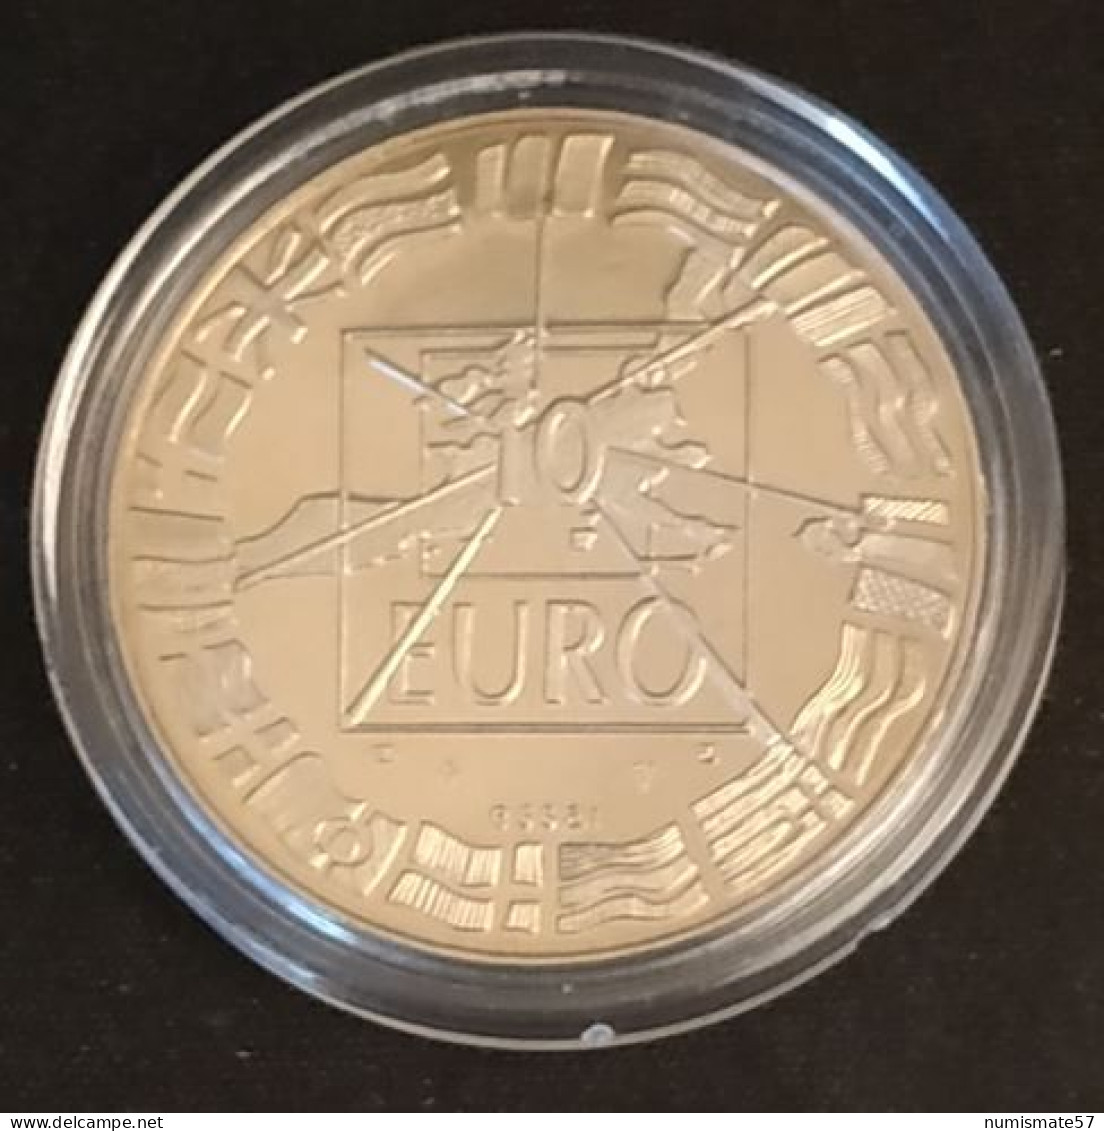 ESSAI - 10 Euros Essai 1998 - Bronze Florentin - Pruebas